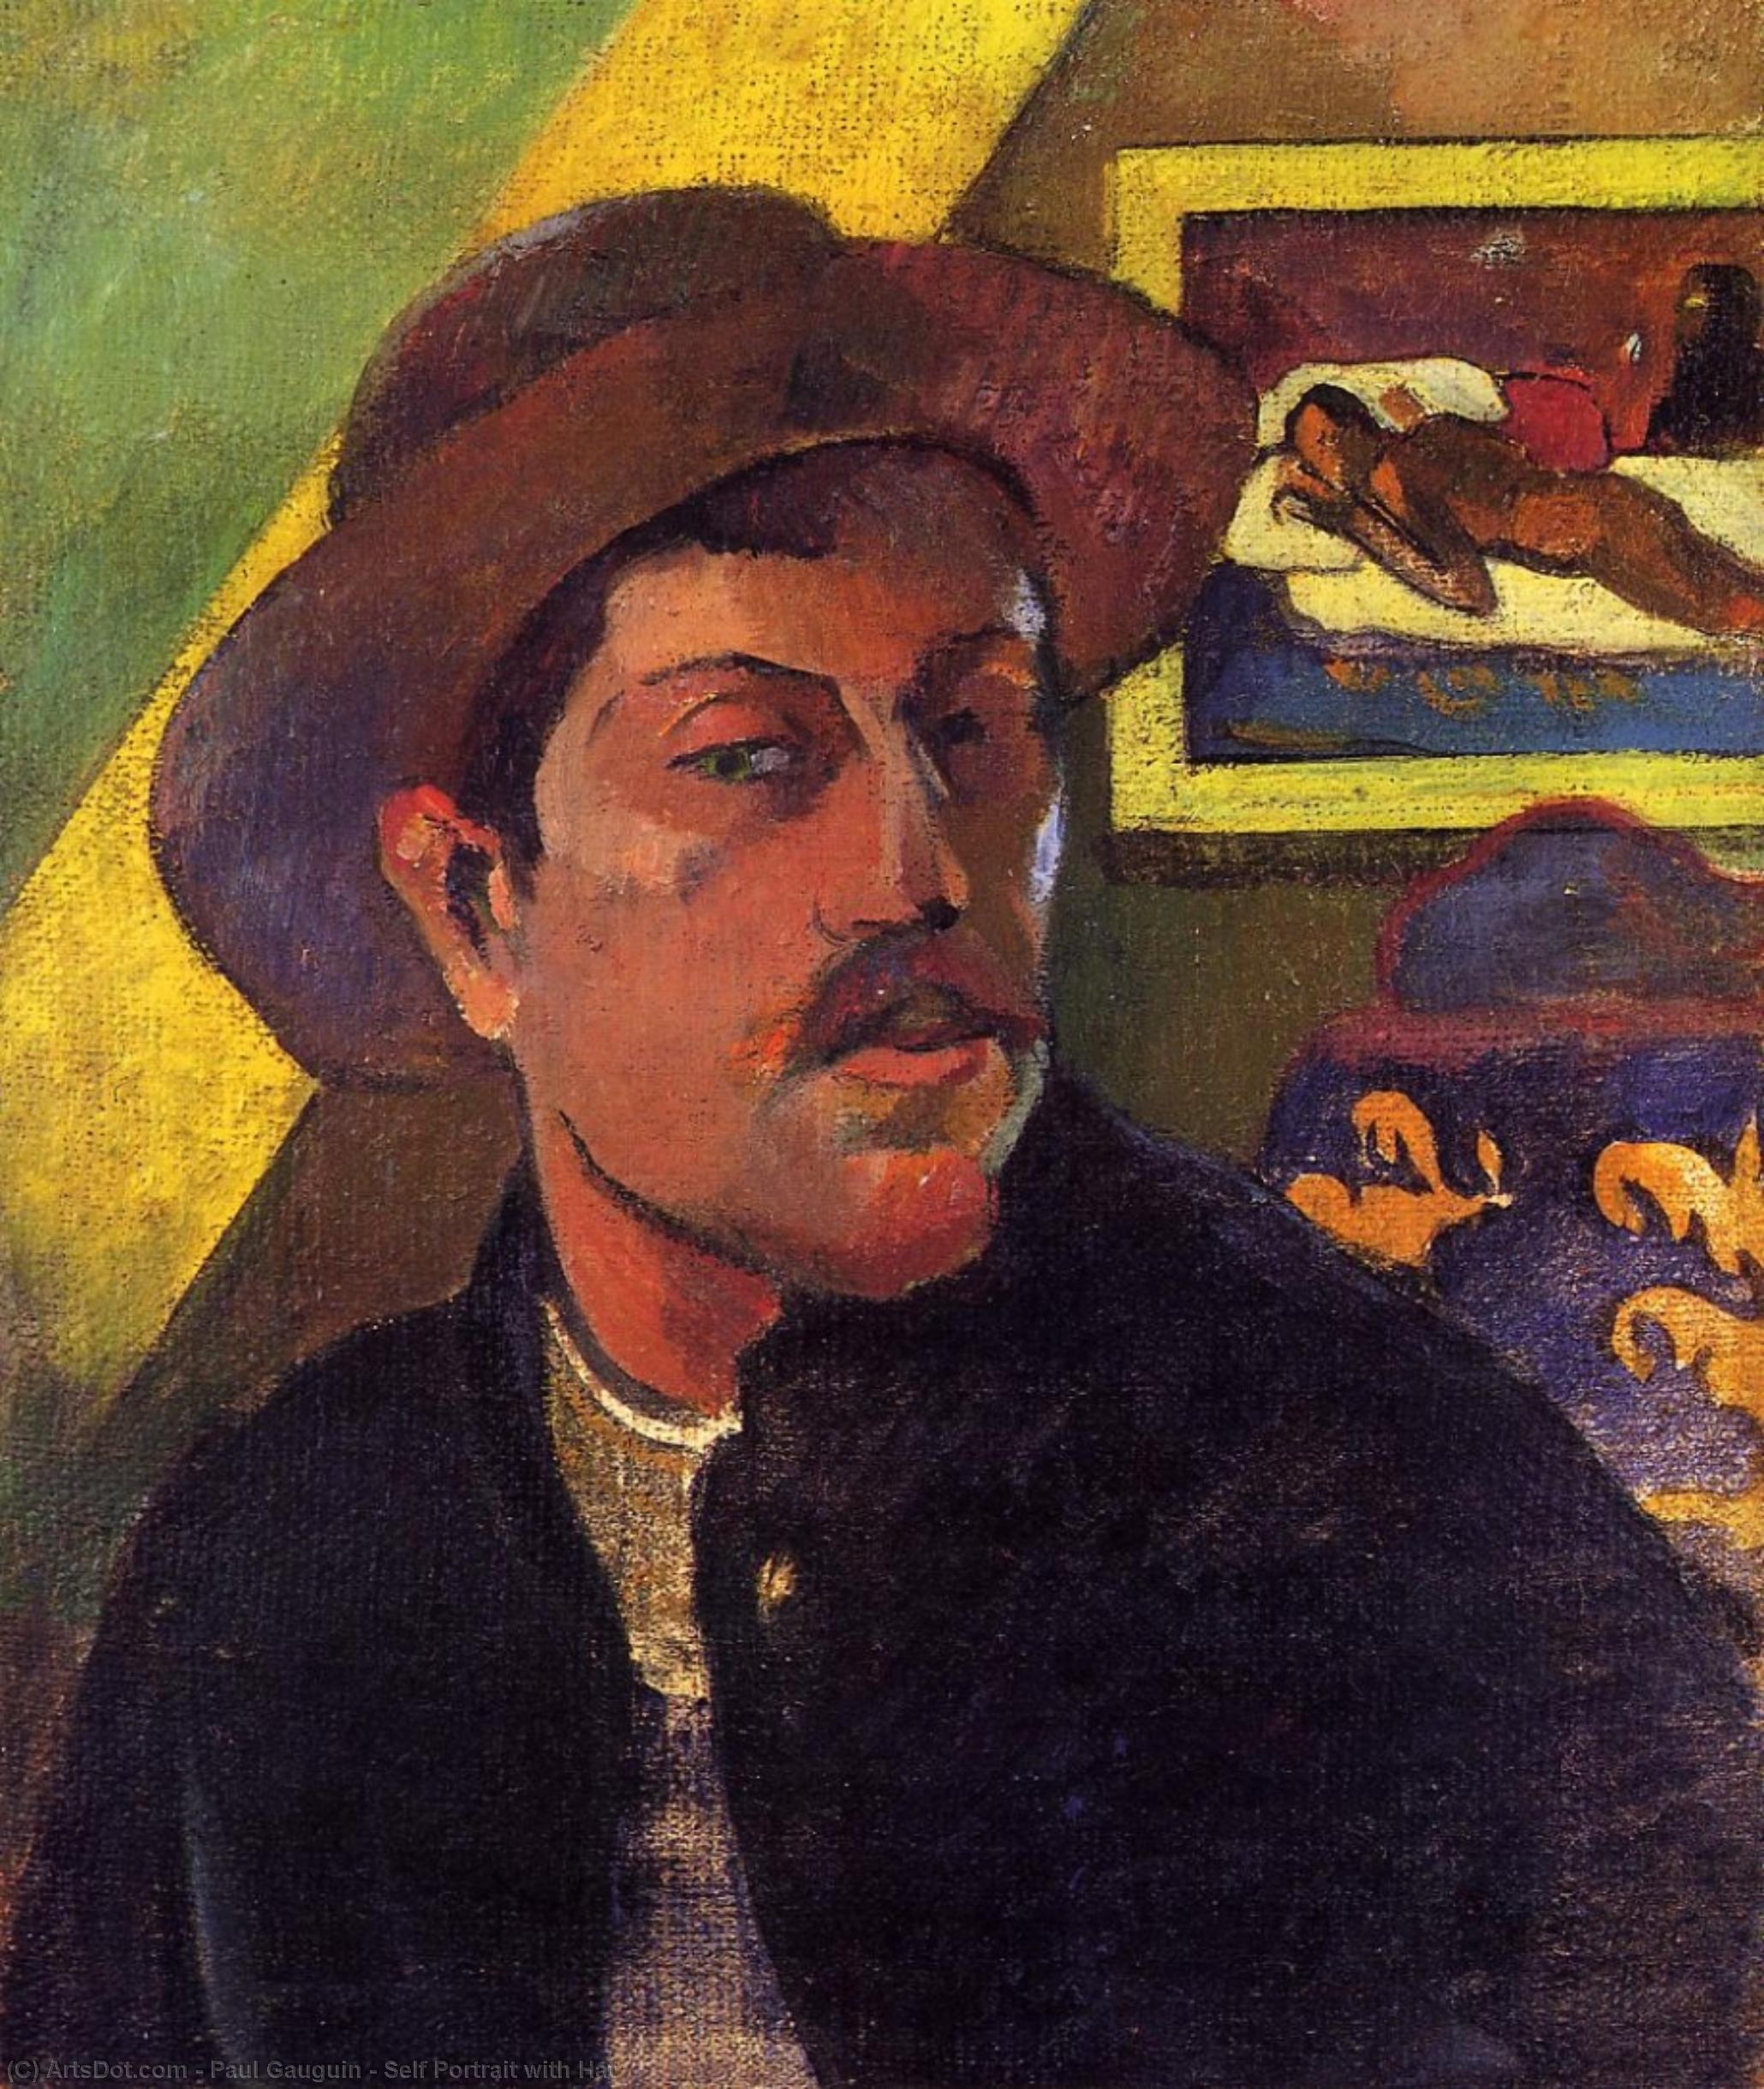 WikiOO.org - Güzel Sanatlar Ansiklopedisi - Resim, Resimler Paul Gauguin - Self Portrait with Hat